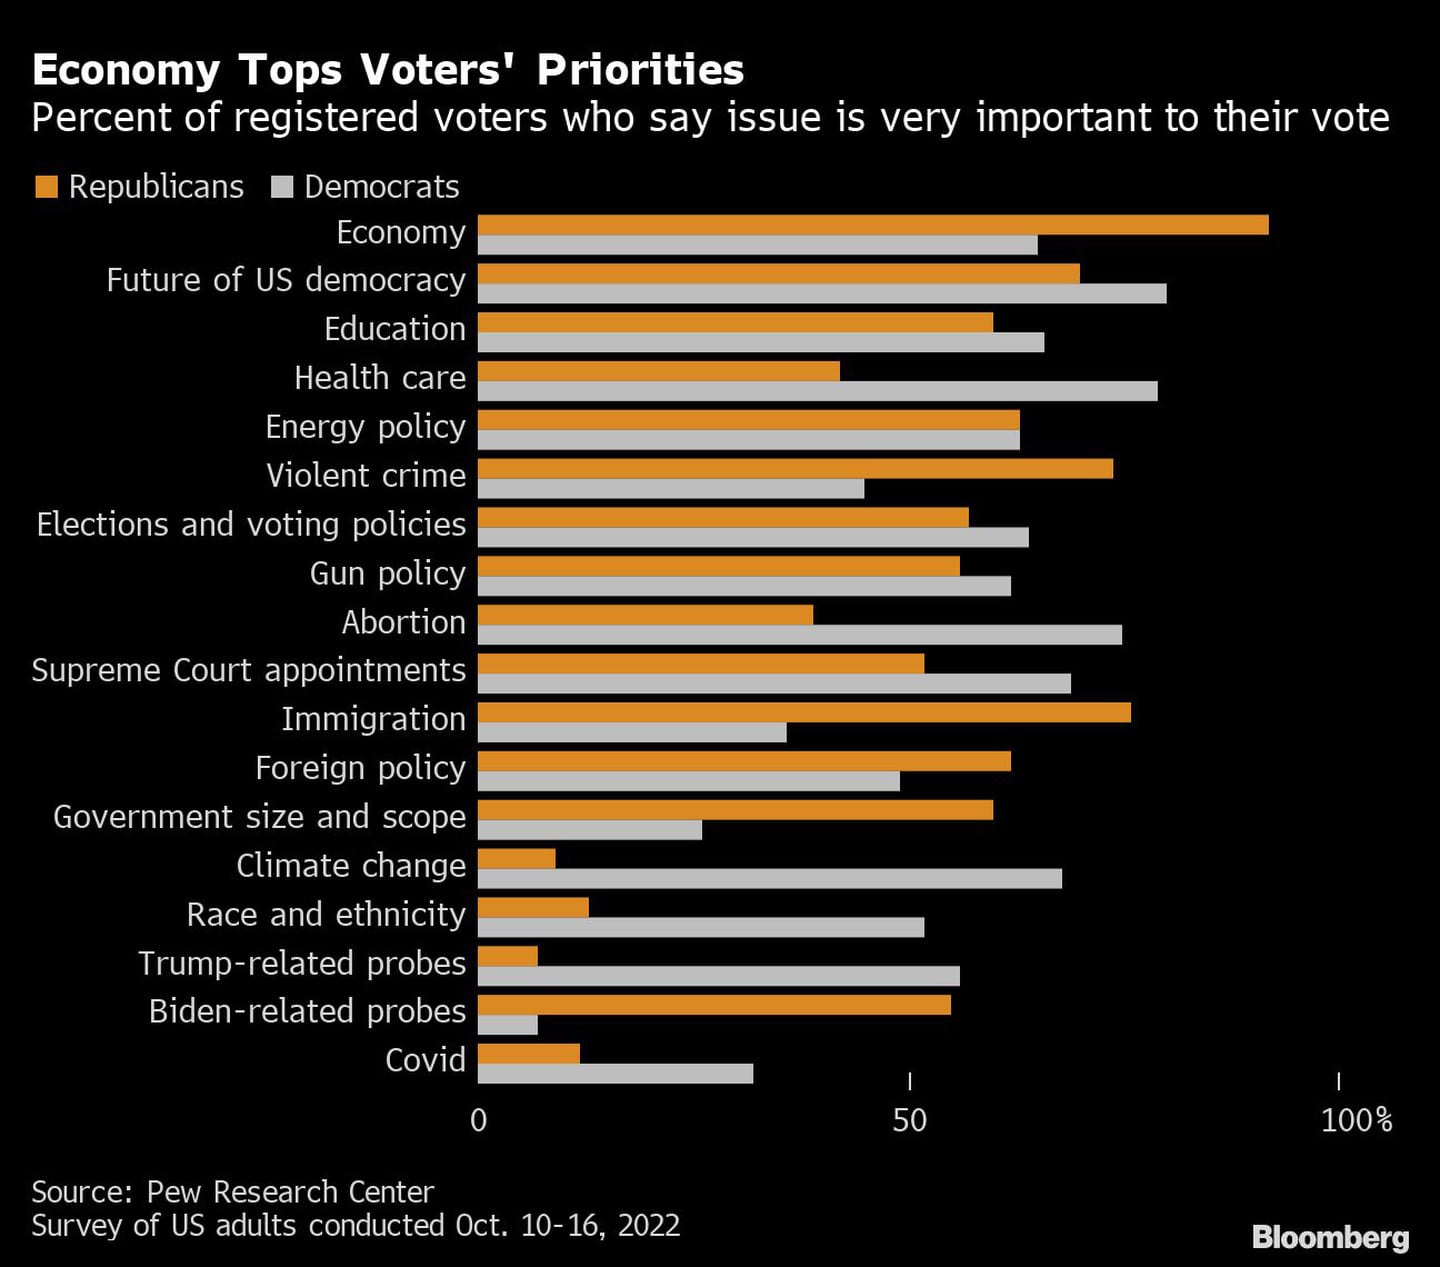 La economía encabeza las prioridades de los votantes | Porcentaje de votantes registrados que dicen que el tema es muy importante para su votodfd